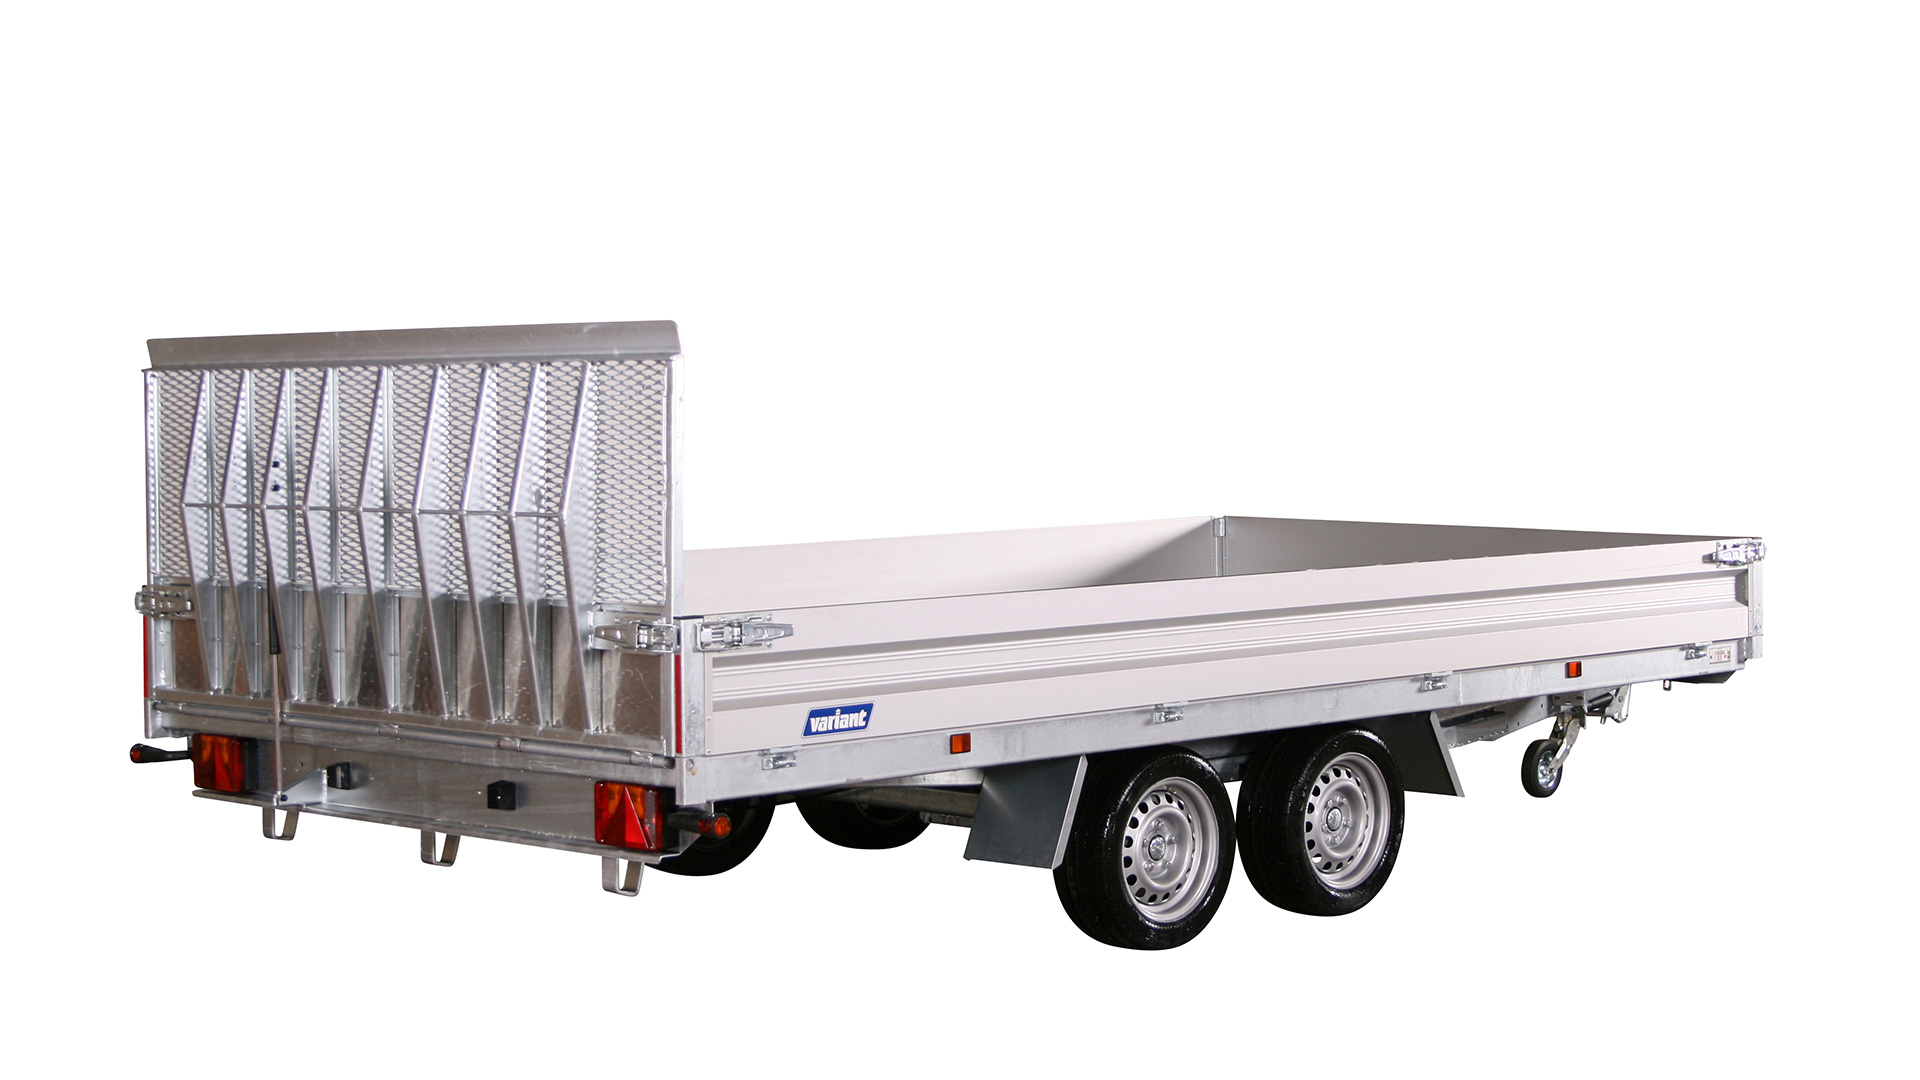 Variant PKW Anhänger Universaltransporter 3521 U4 - kippbar,3500 kg, Ladefläche 4,20 x 2,10 m, mit Bordwände